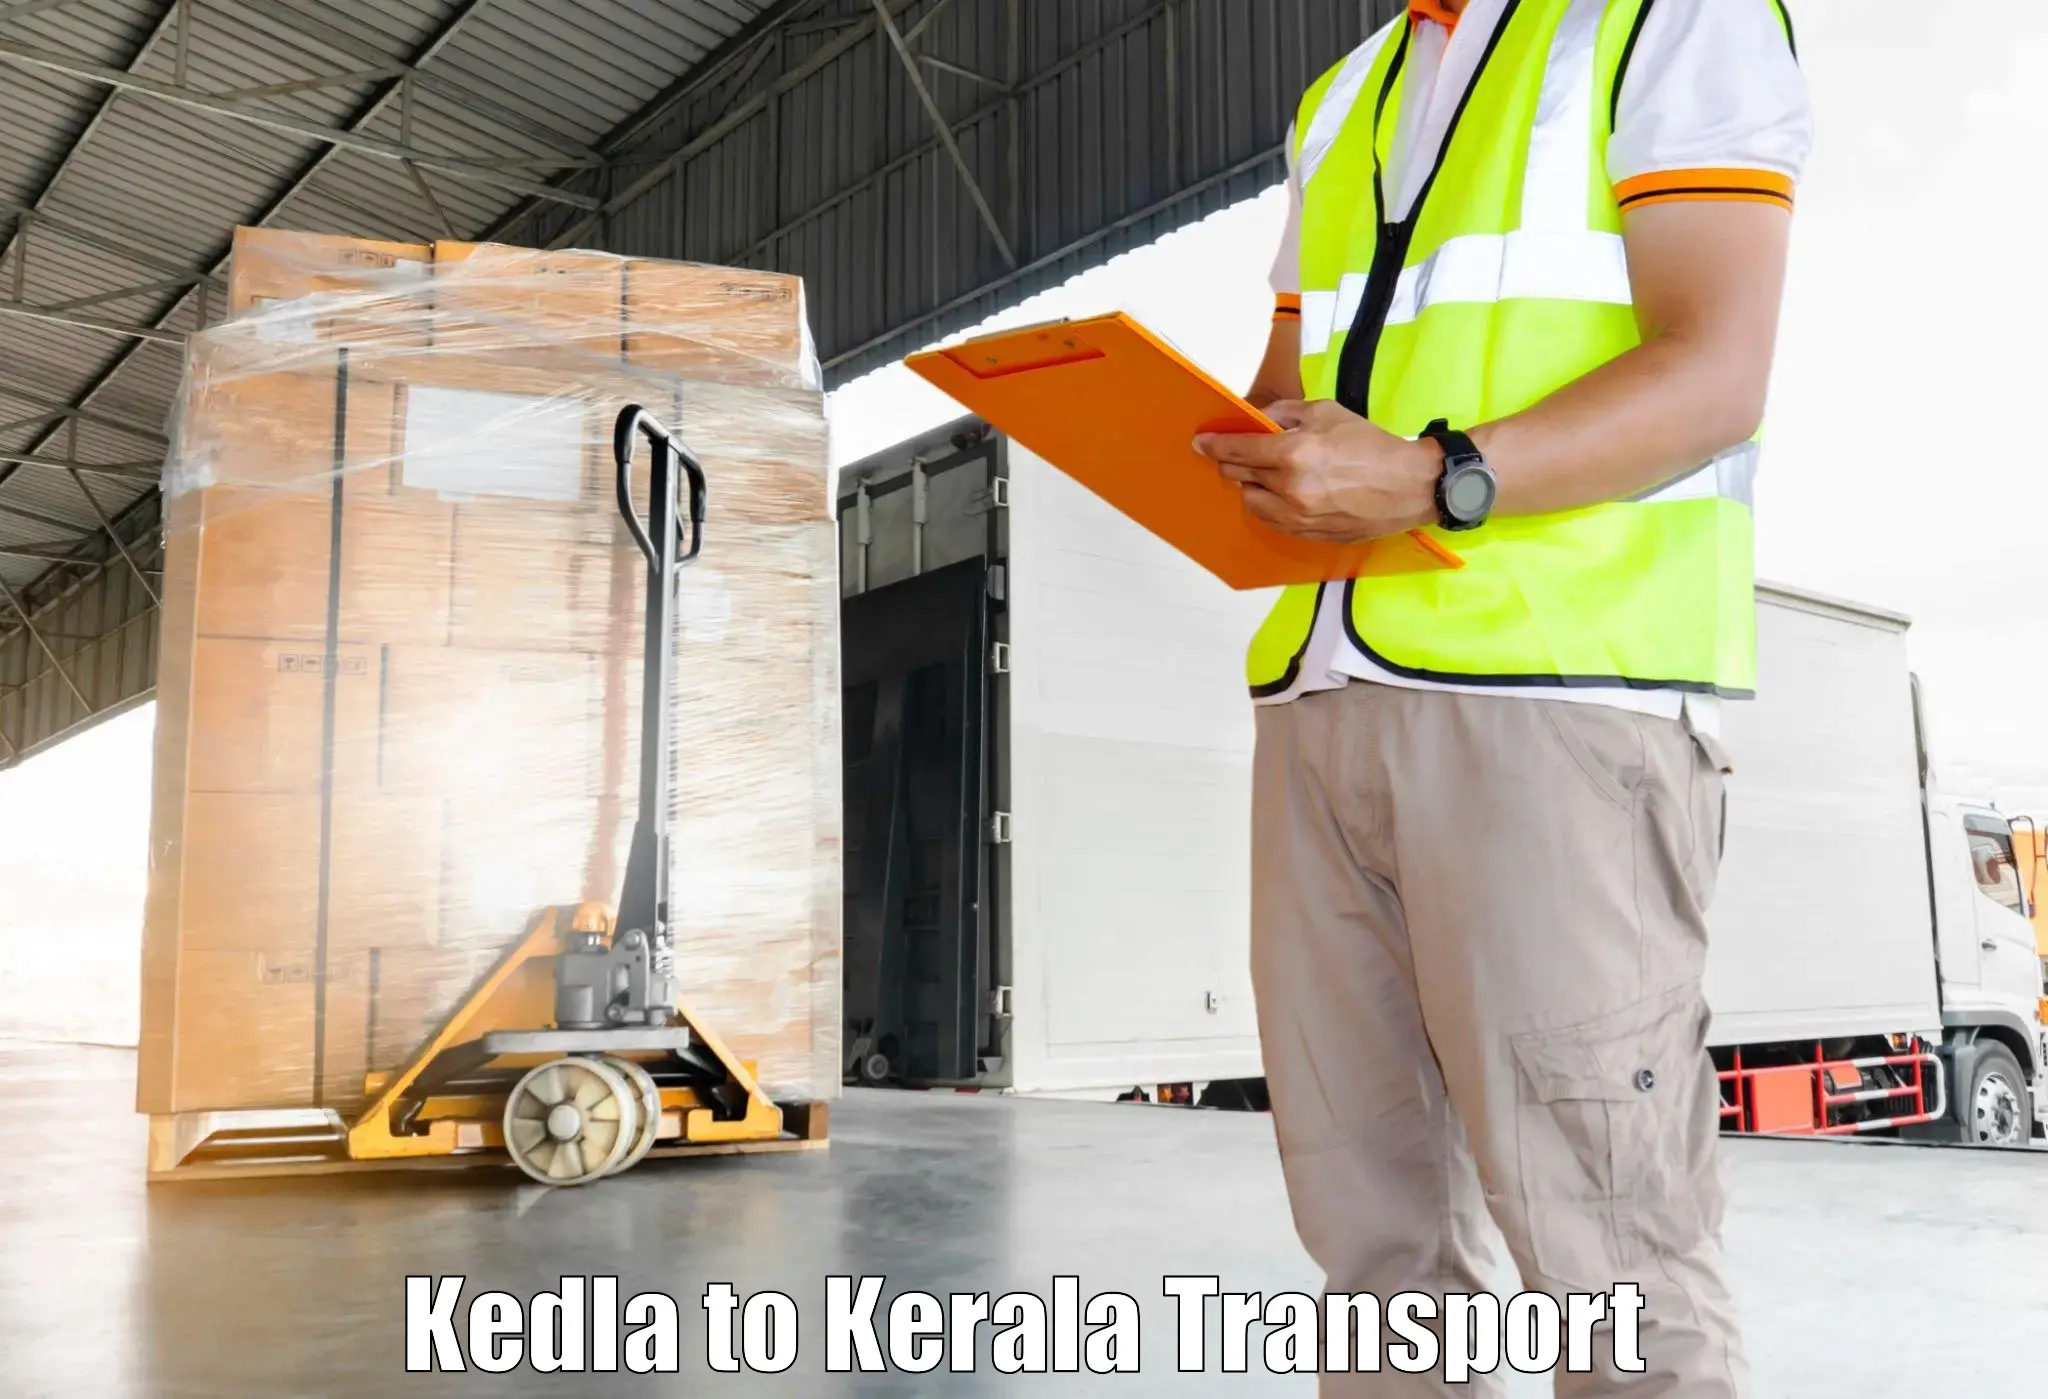 Shipping services Kedla to Kuttiady